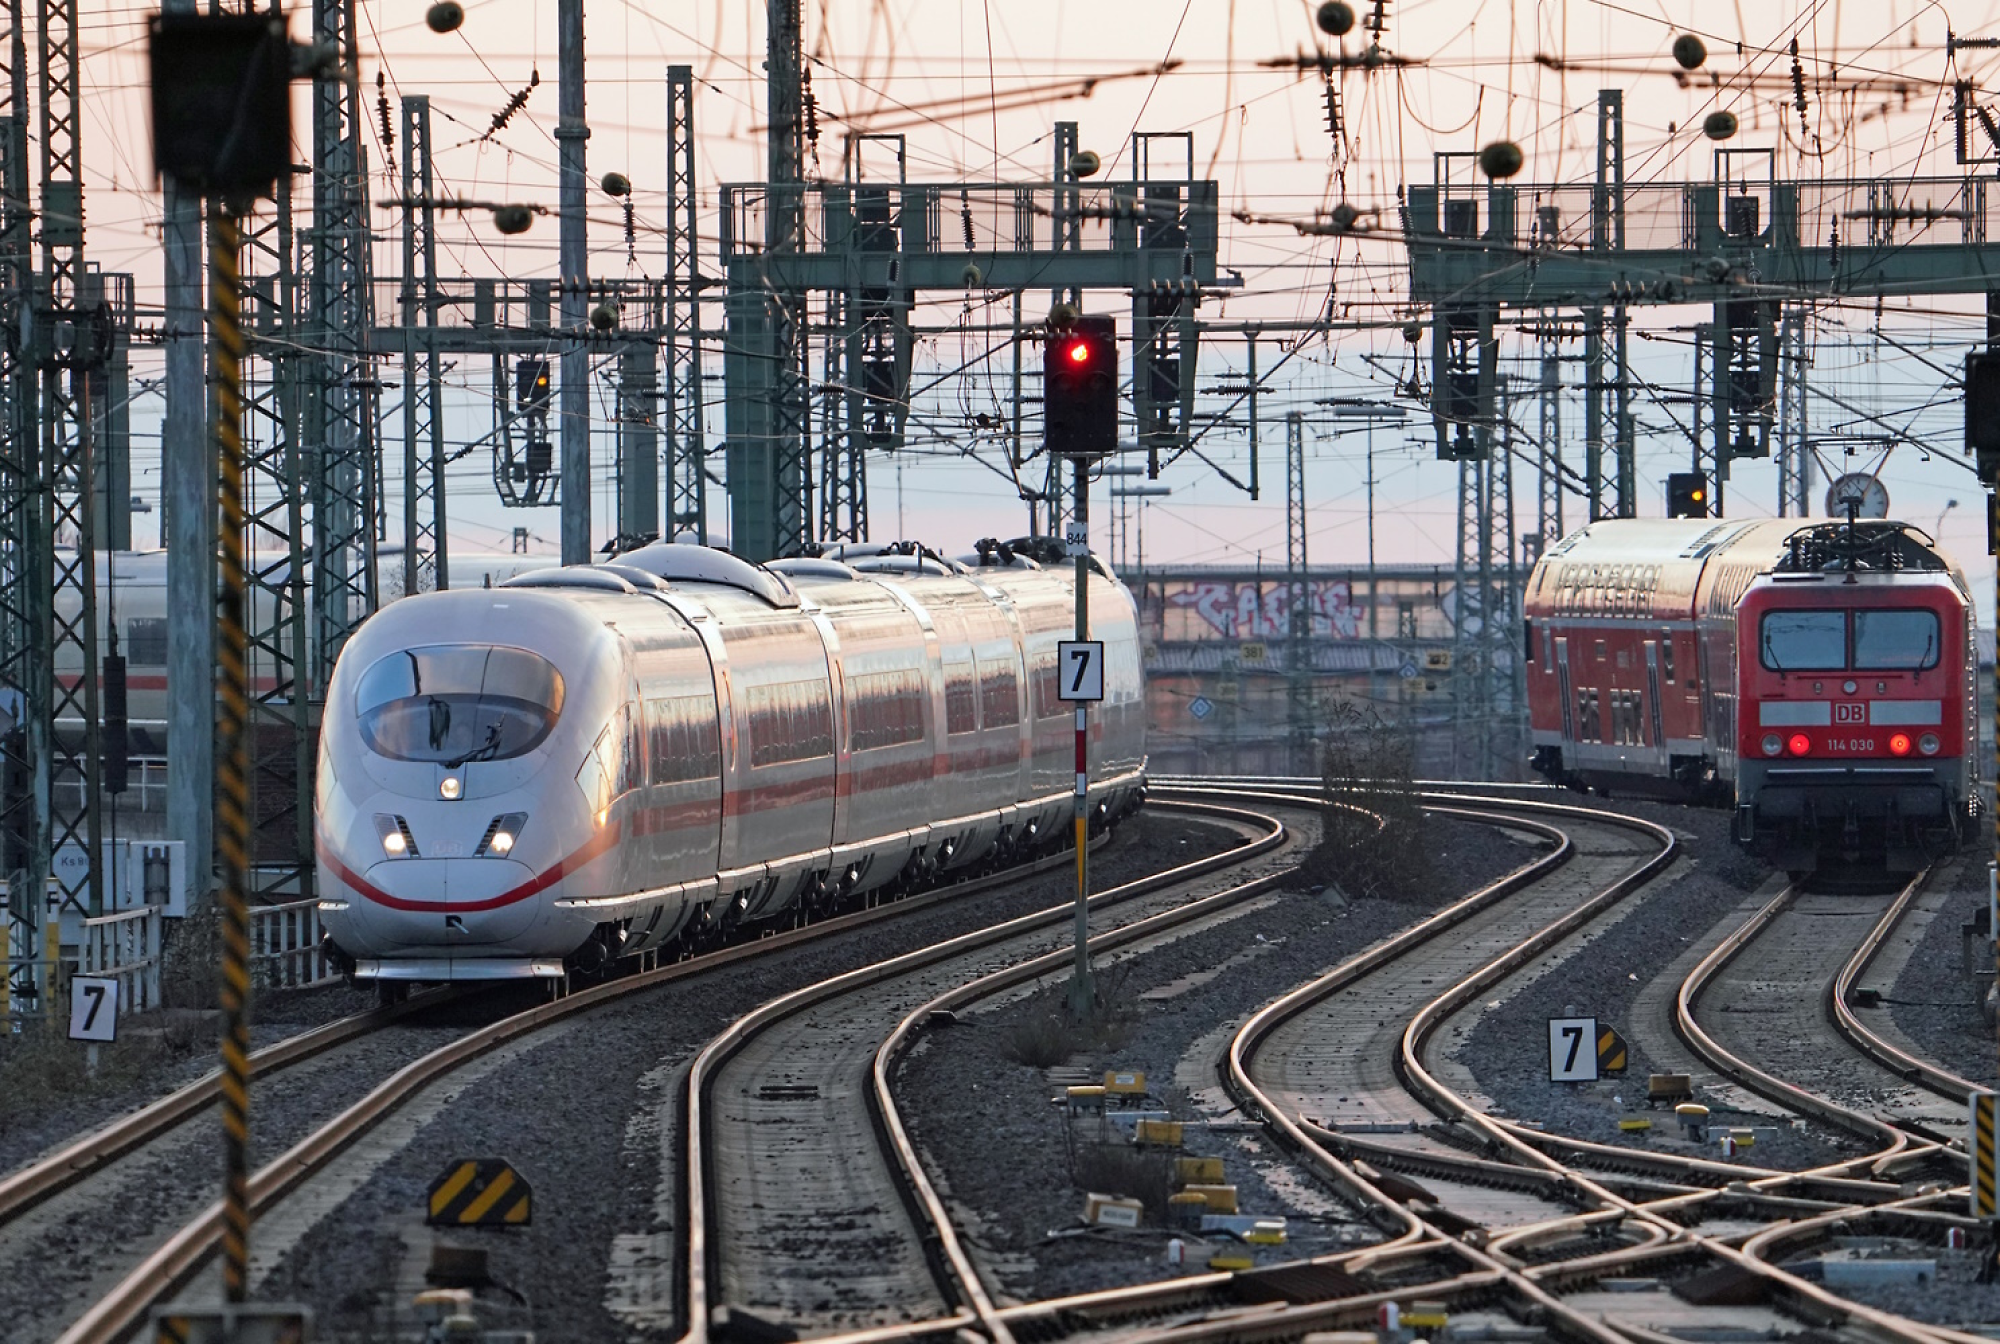 Un train moderne à grande vitesse arrivant dans une gare avec plusieurs voies ferrées et des câbles aériens au crépuscule.